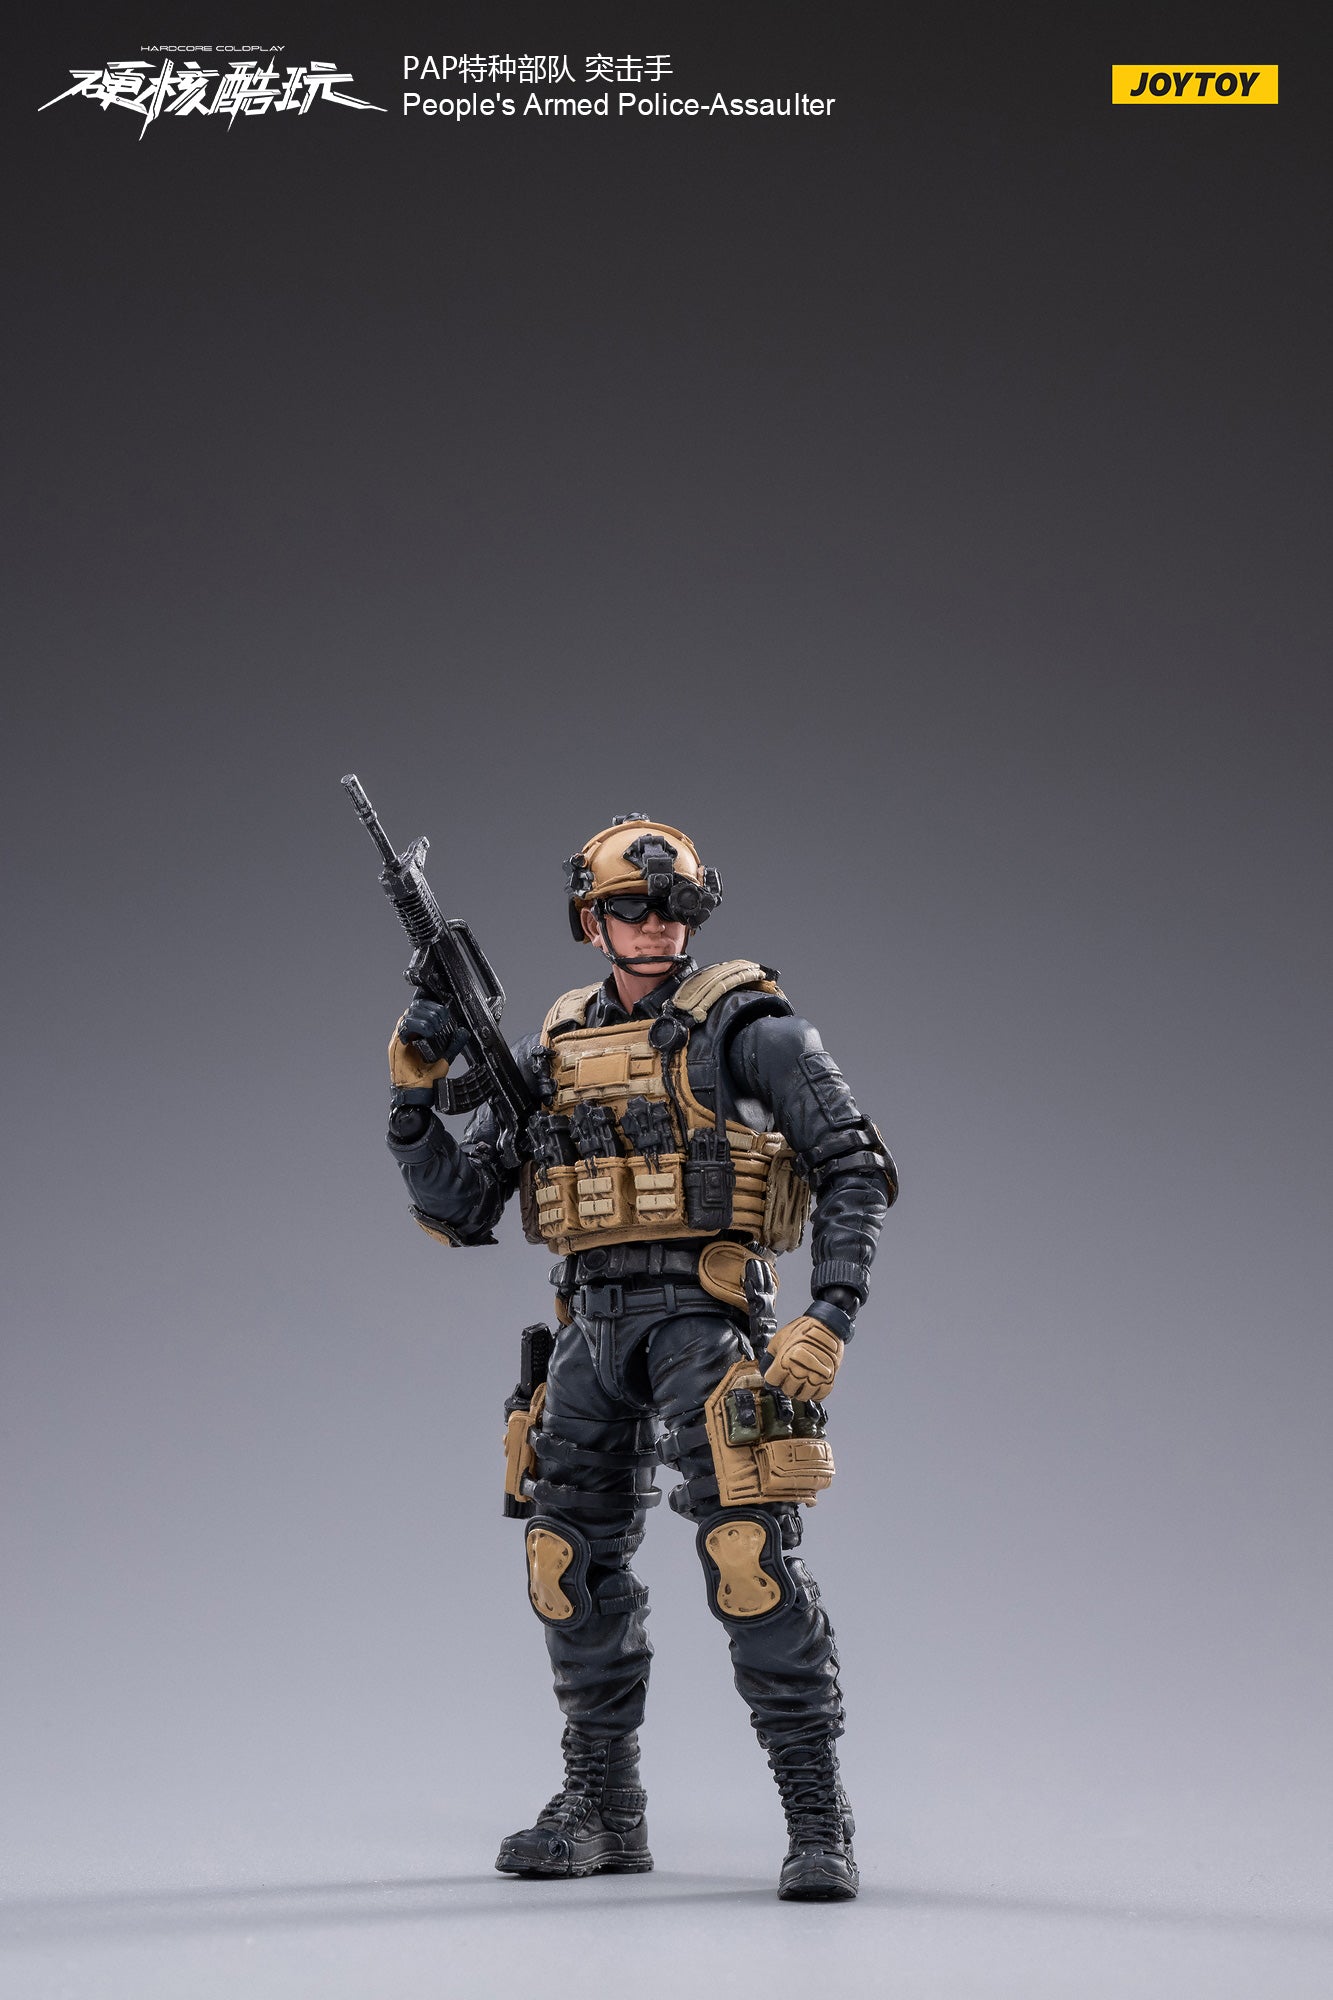 JOYTOY PAP-Assaulter 1/8 Scale Action Figure